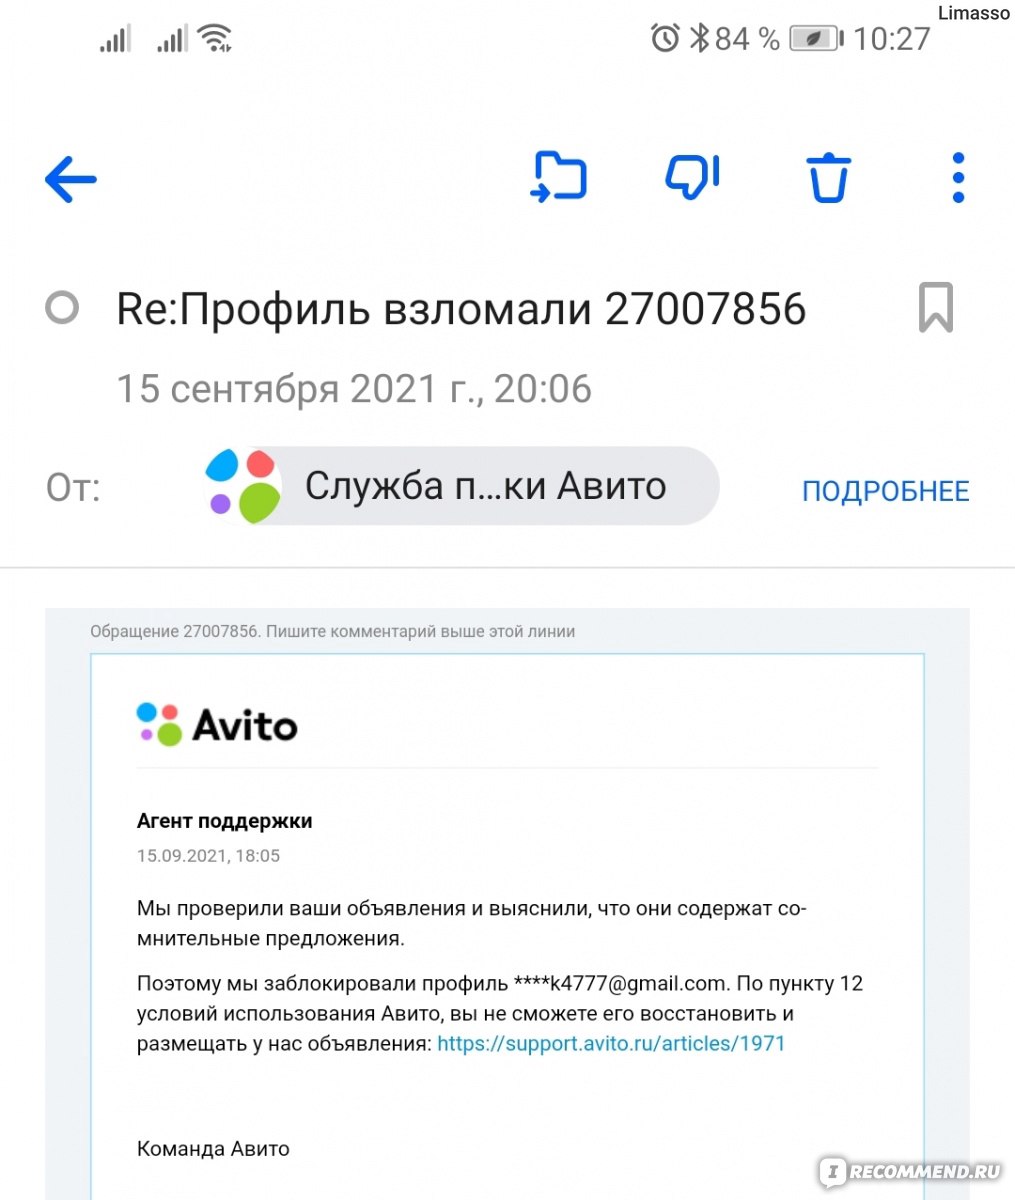 Что, если заблокировали профиль на Авито? Вернуть аккаунт не получится? — Торговля на hb-crm.ru